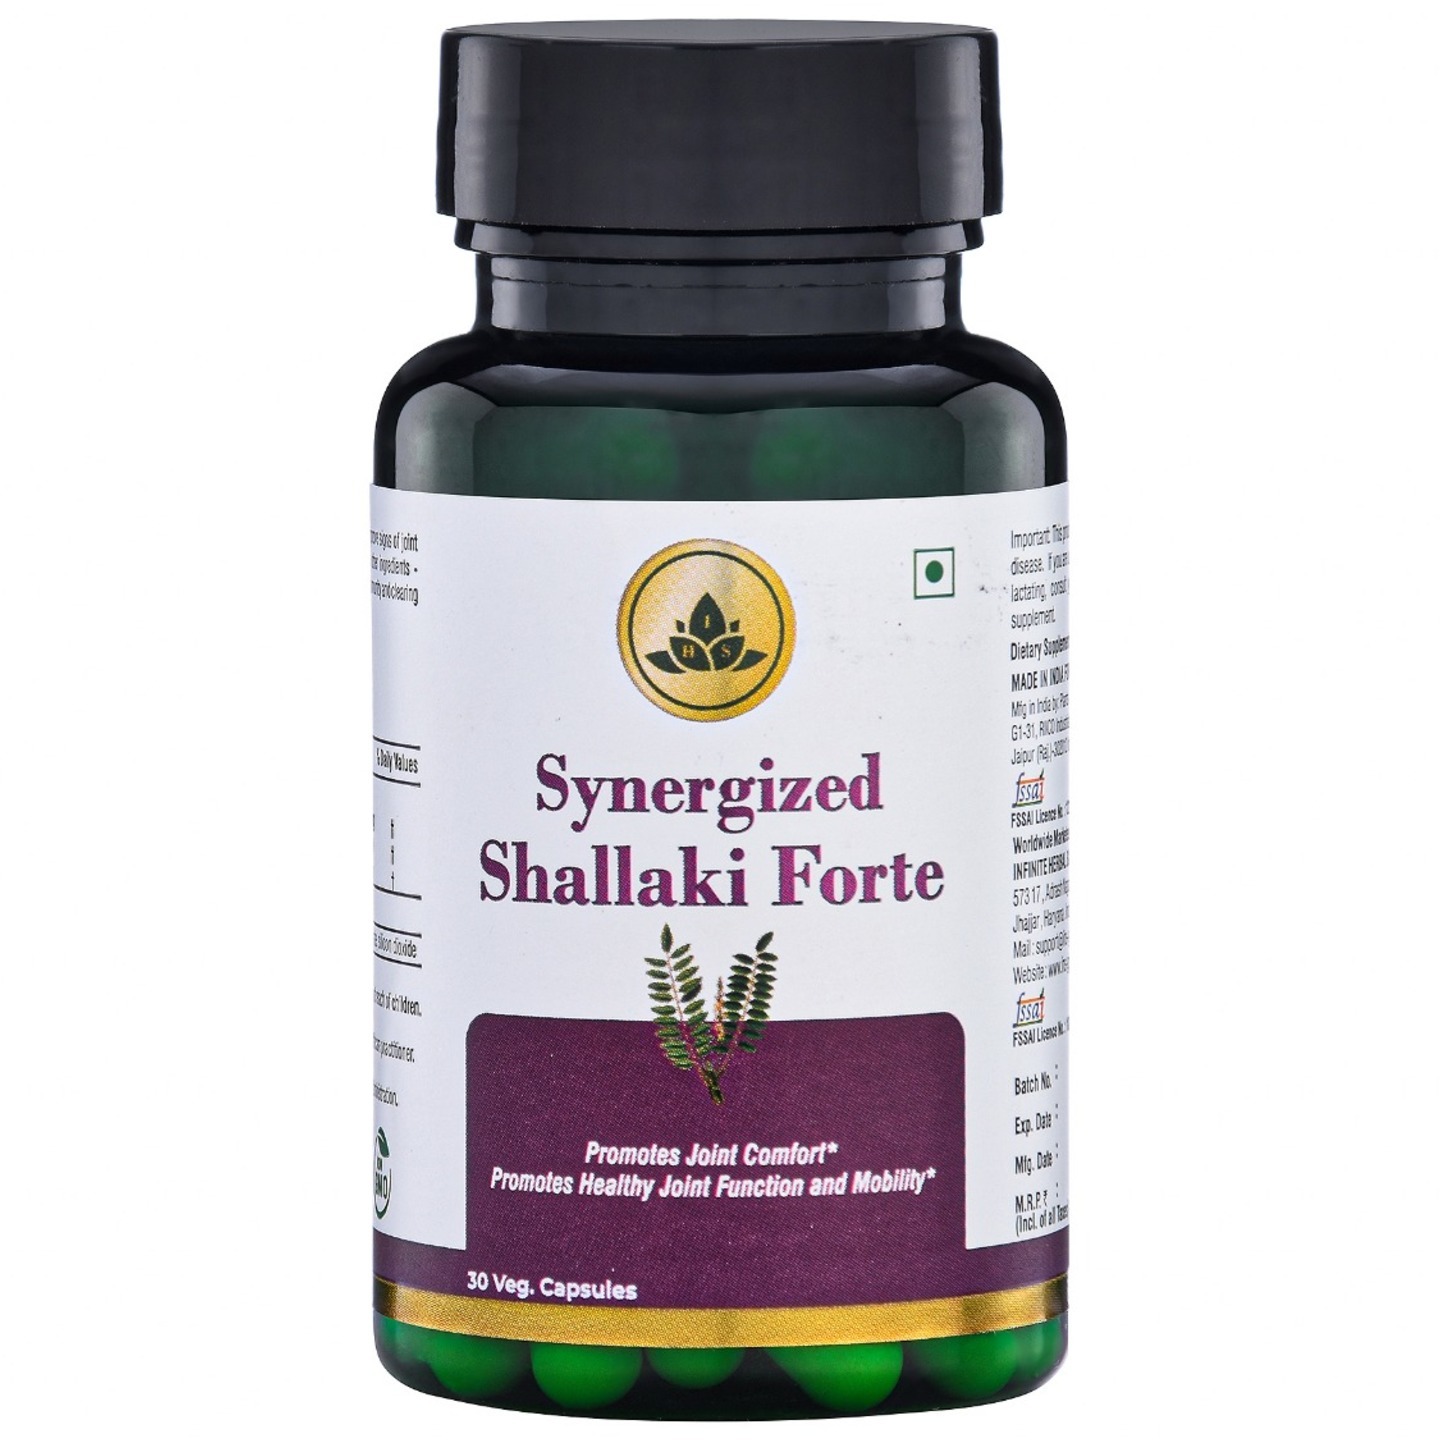 Synergized Shallaki Forte